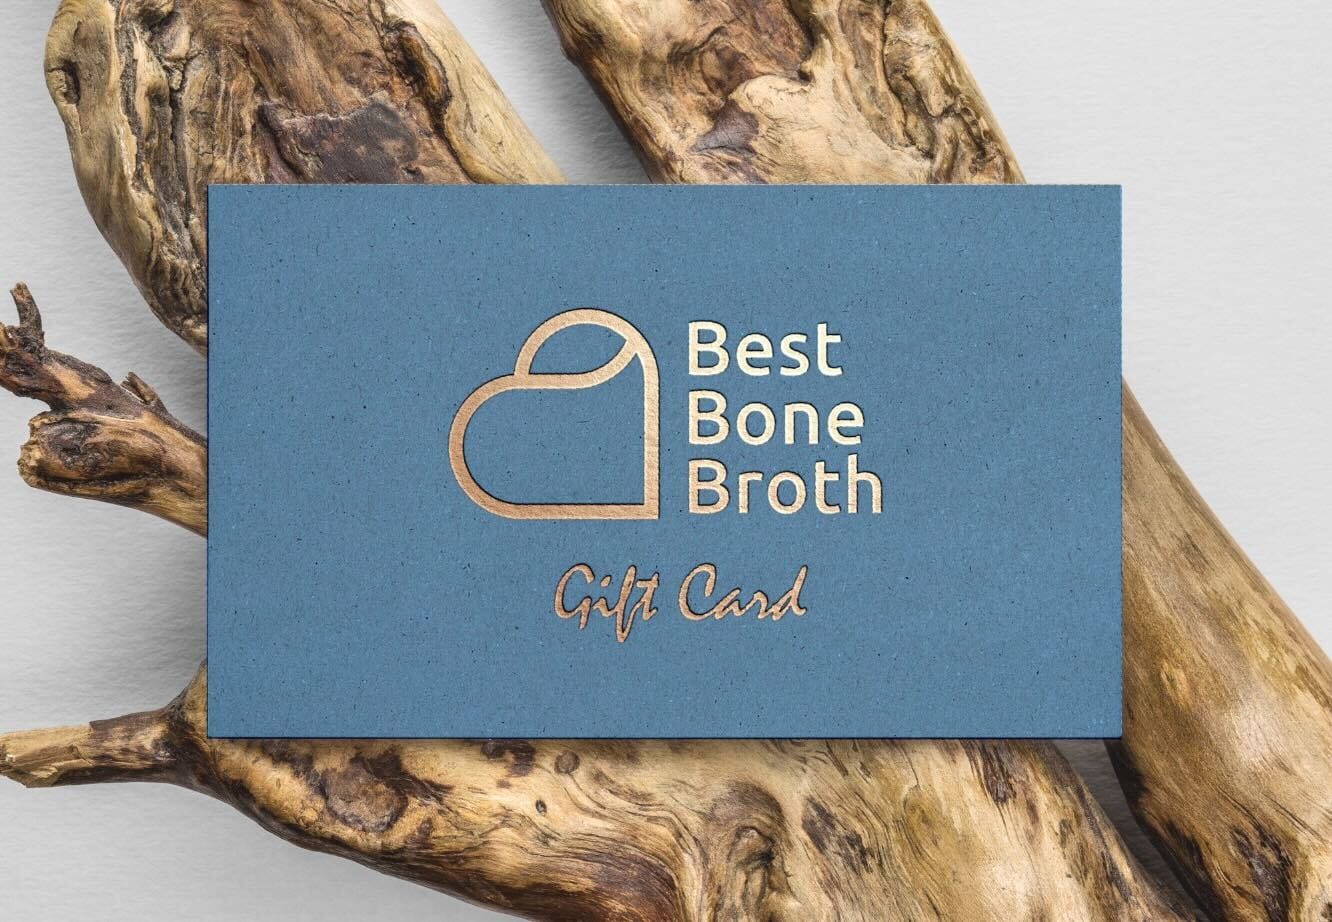 Best Bone Broth - UK Best Bone Broth Gift Card